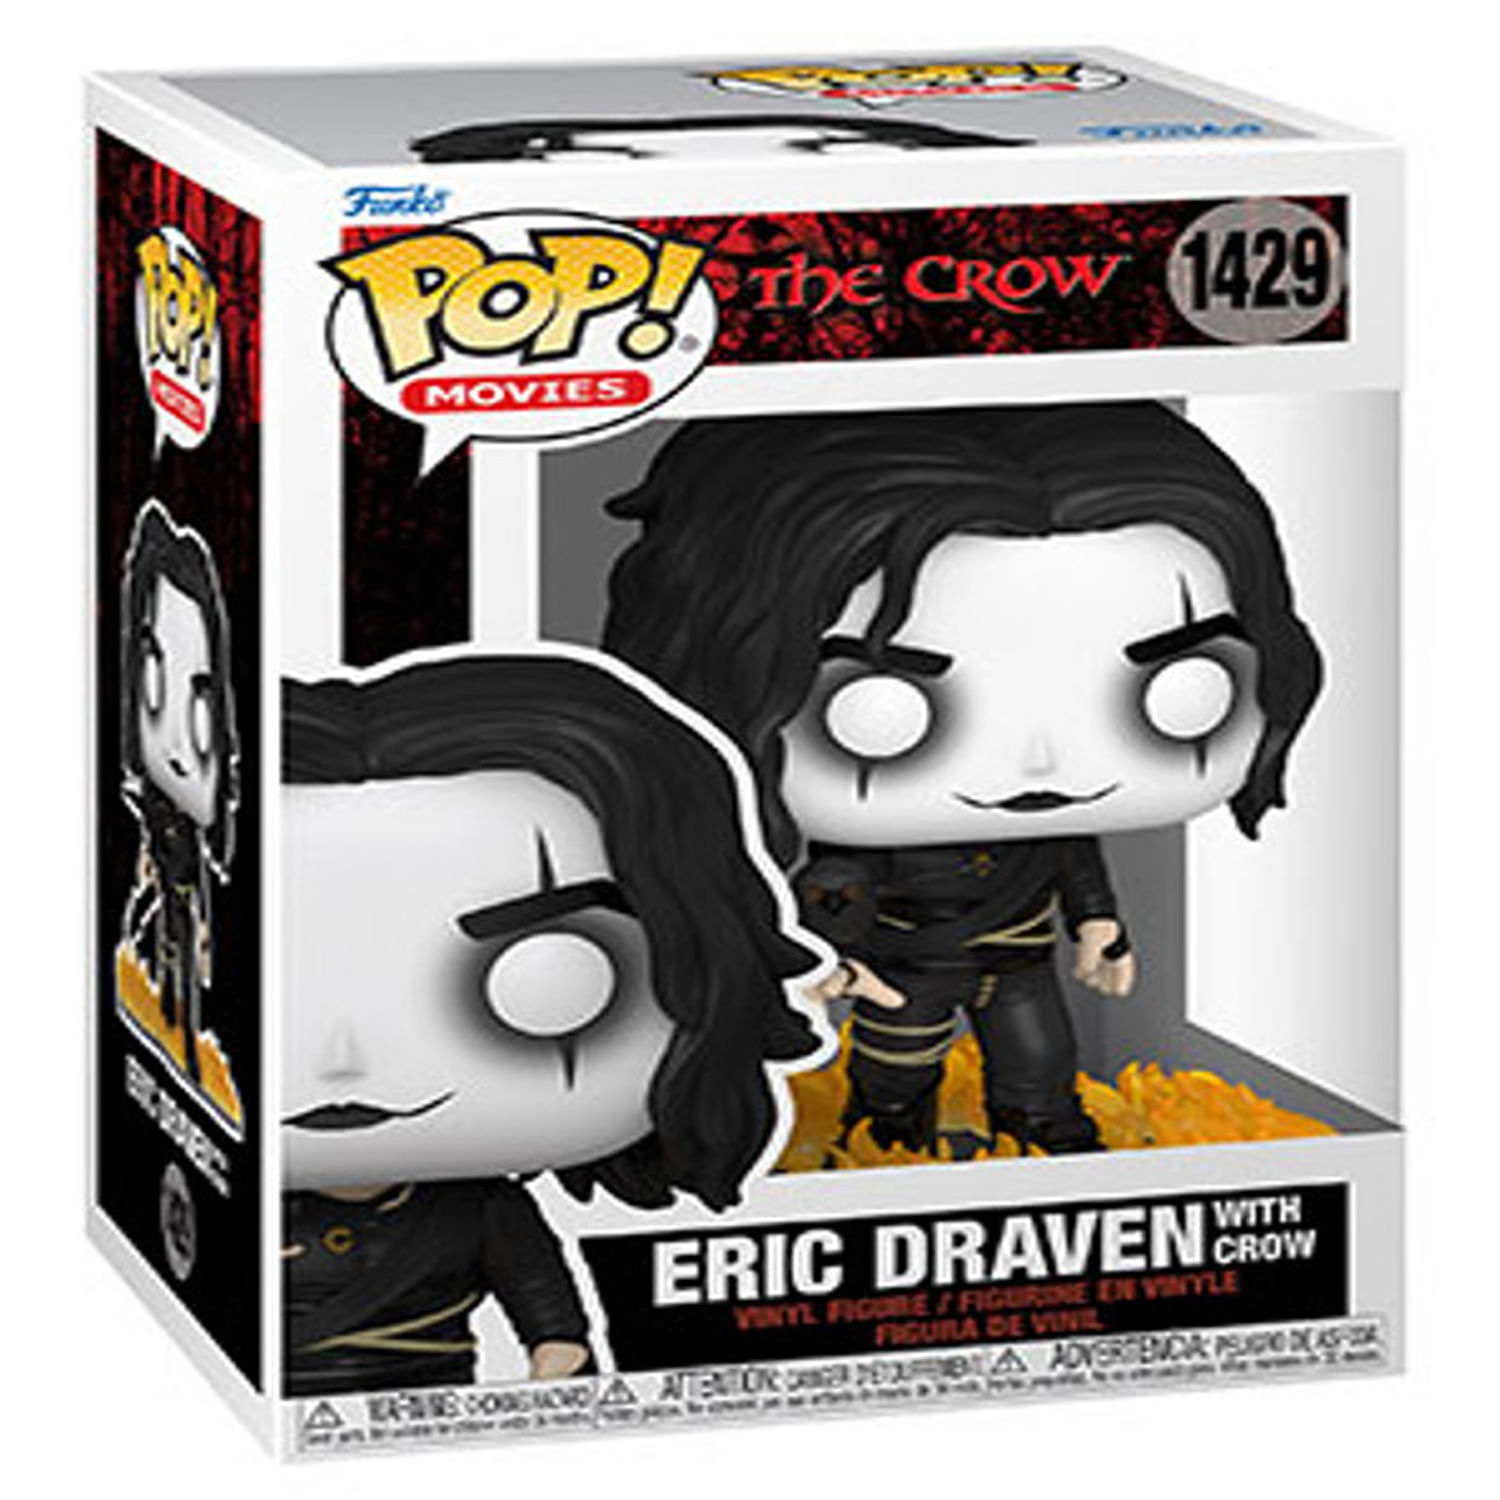 The Crow Eric Draven with Crow Funko Pop Vinyl Figure 1429